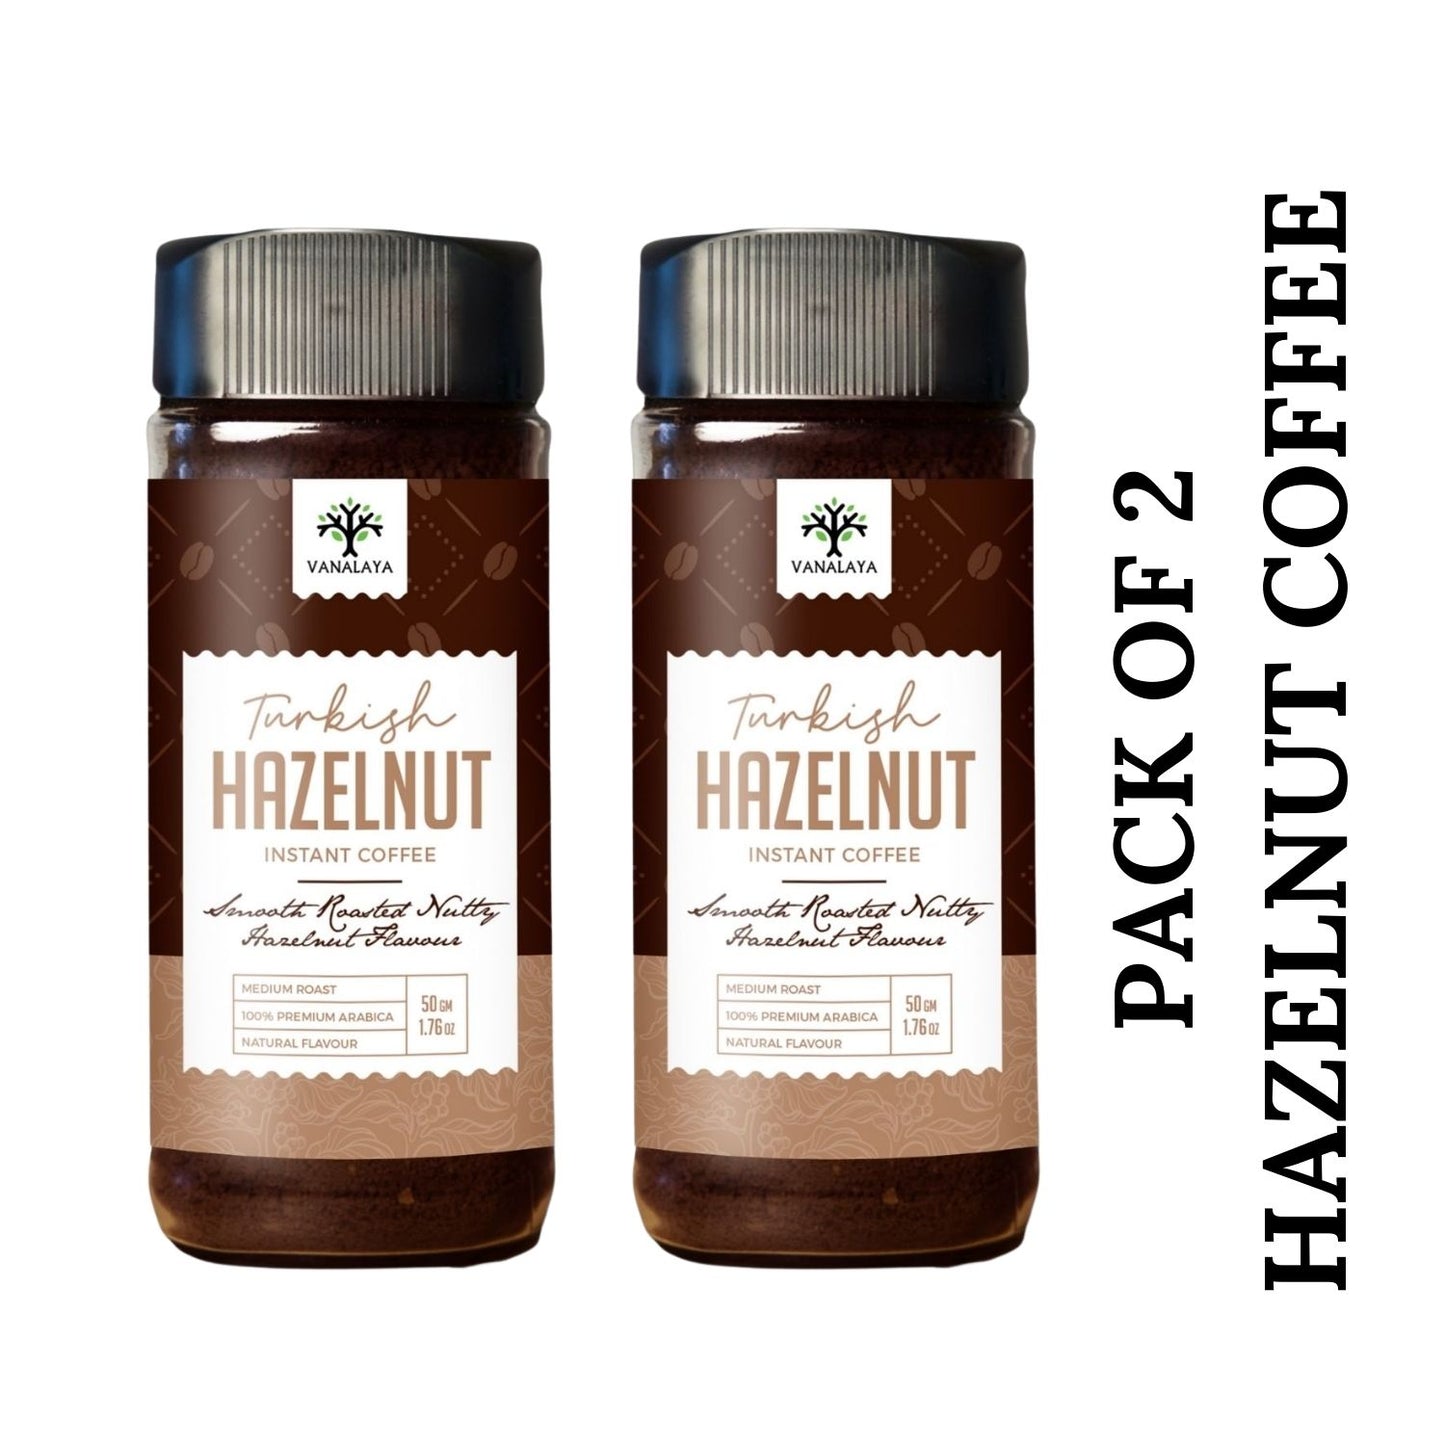 
                  
                    Vanalaya Turkish Hazelnut Instant Coffee Hazelnut Flavour - 50g
                  
                